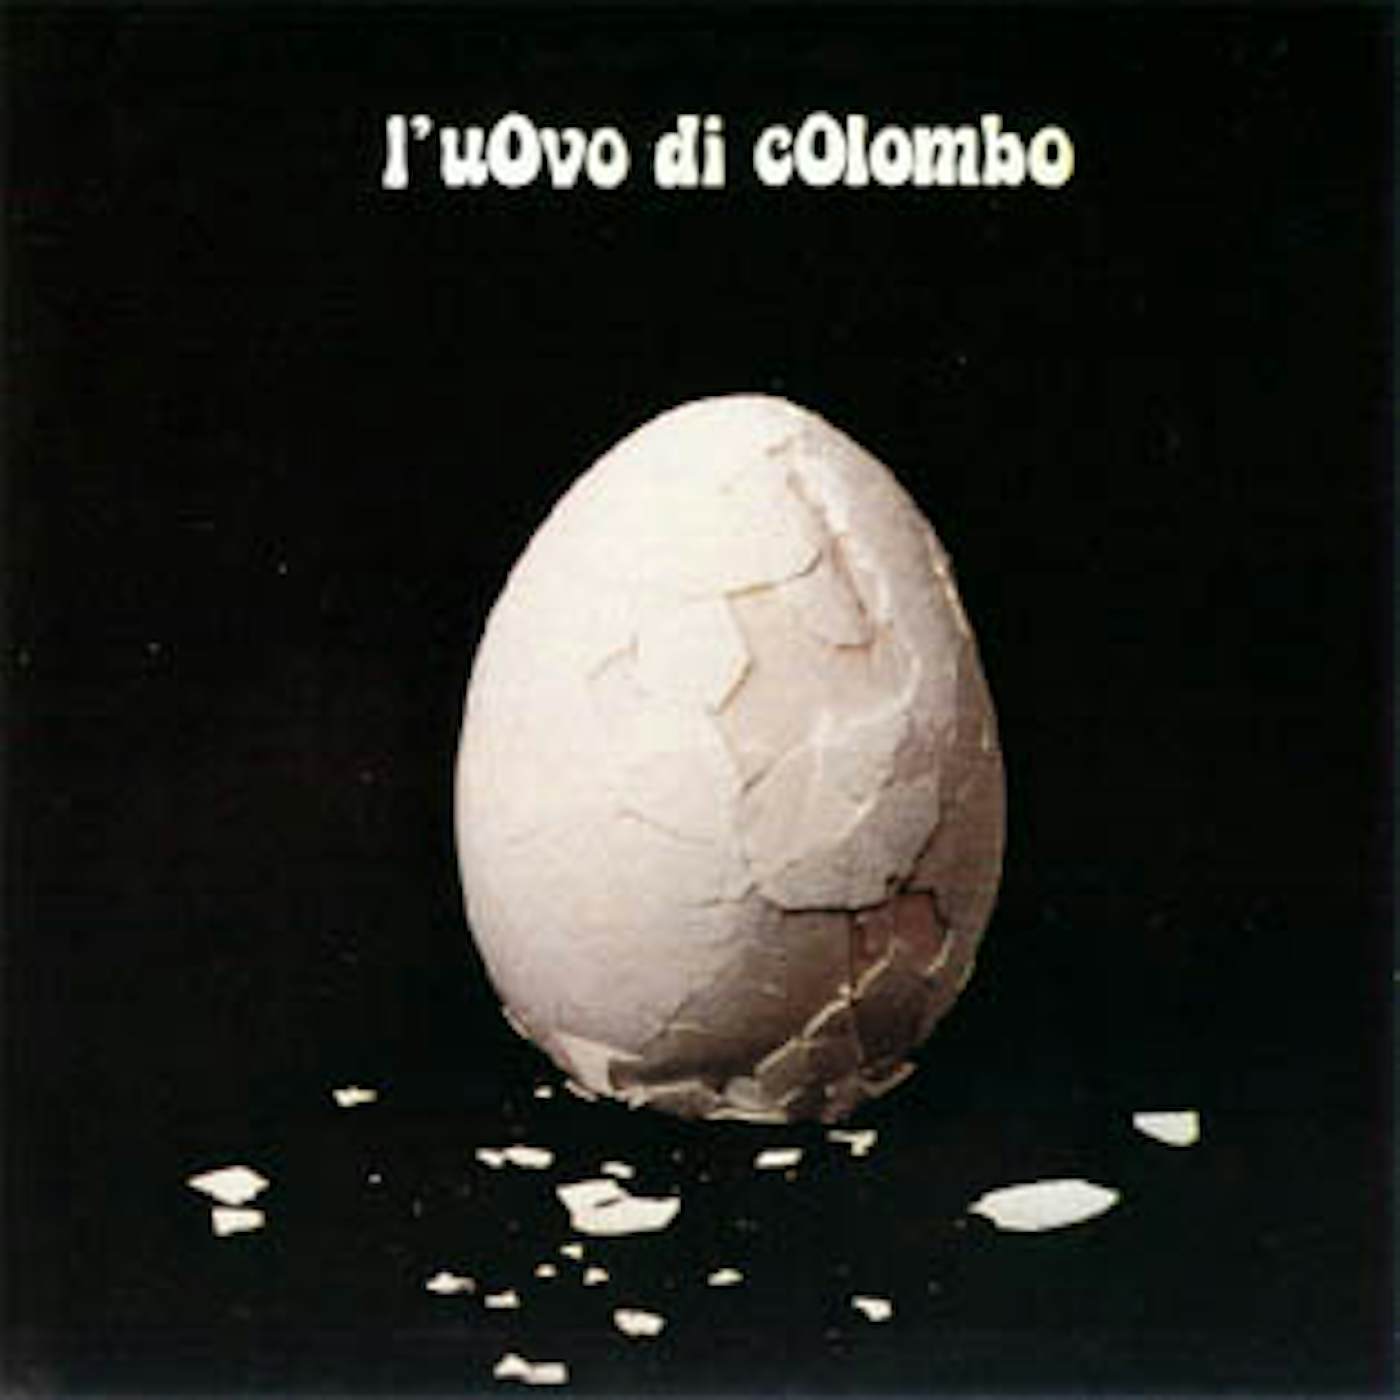 L'Uovo Di Colombo Vinyl Record